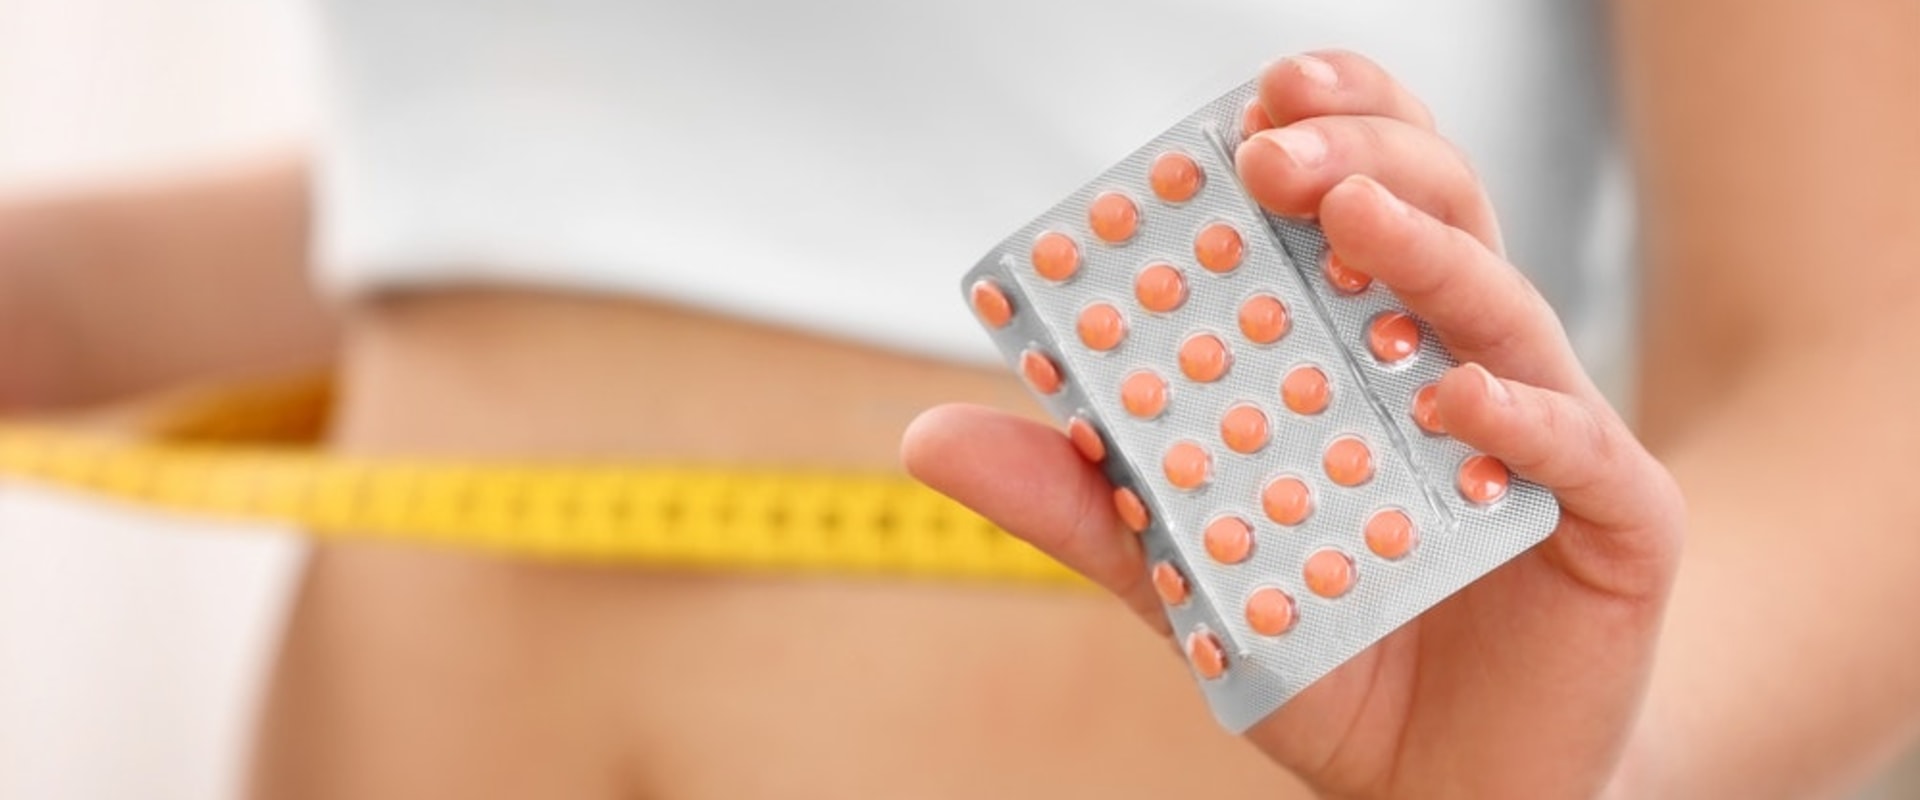 Do weight loss pills work?